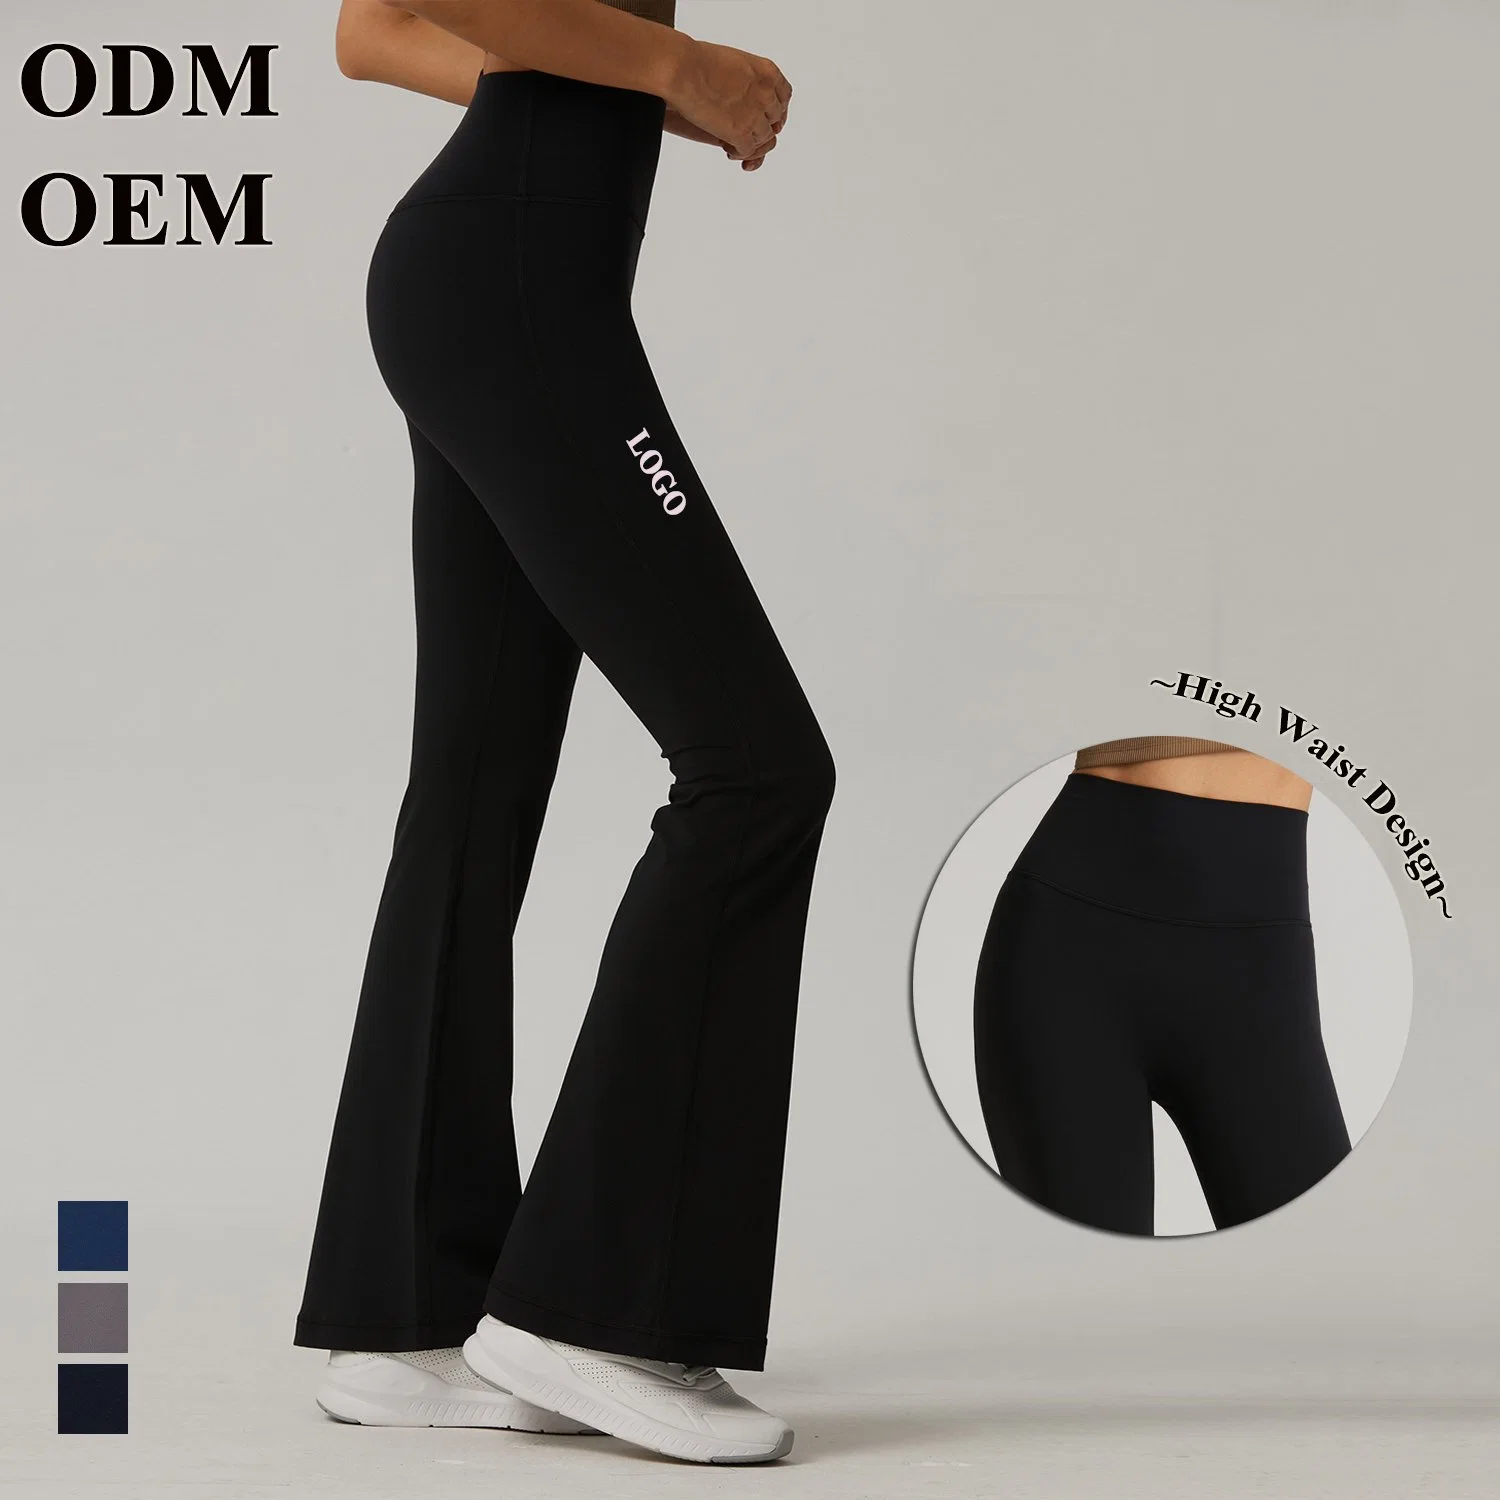 Perneiras Skinny Flared Mulheres Fashion Bell Bottoms Calças Sweatpants mulheres calças desportivas ginásio desgaste de ioga Fitness